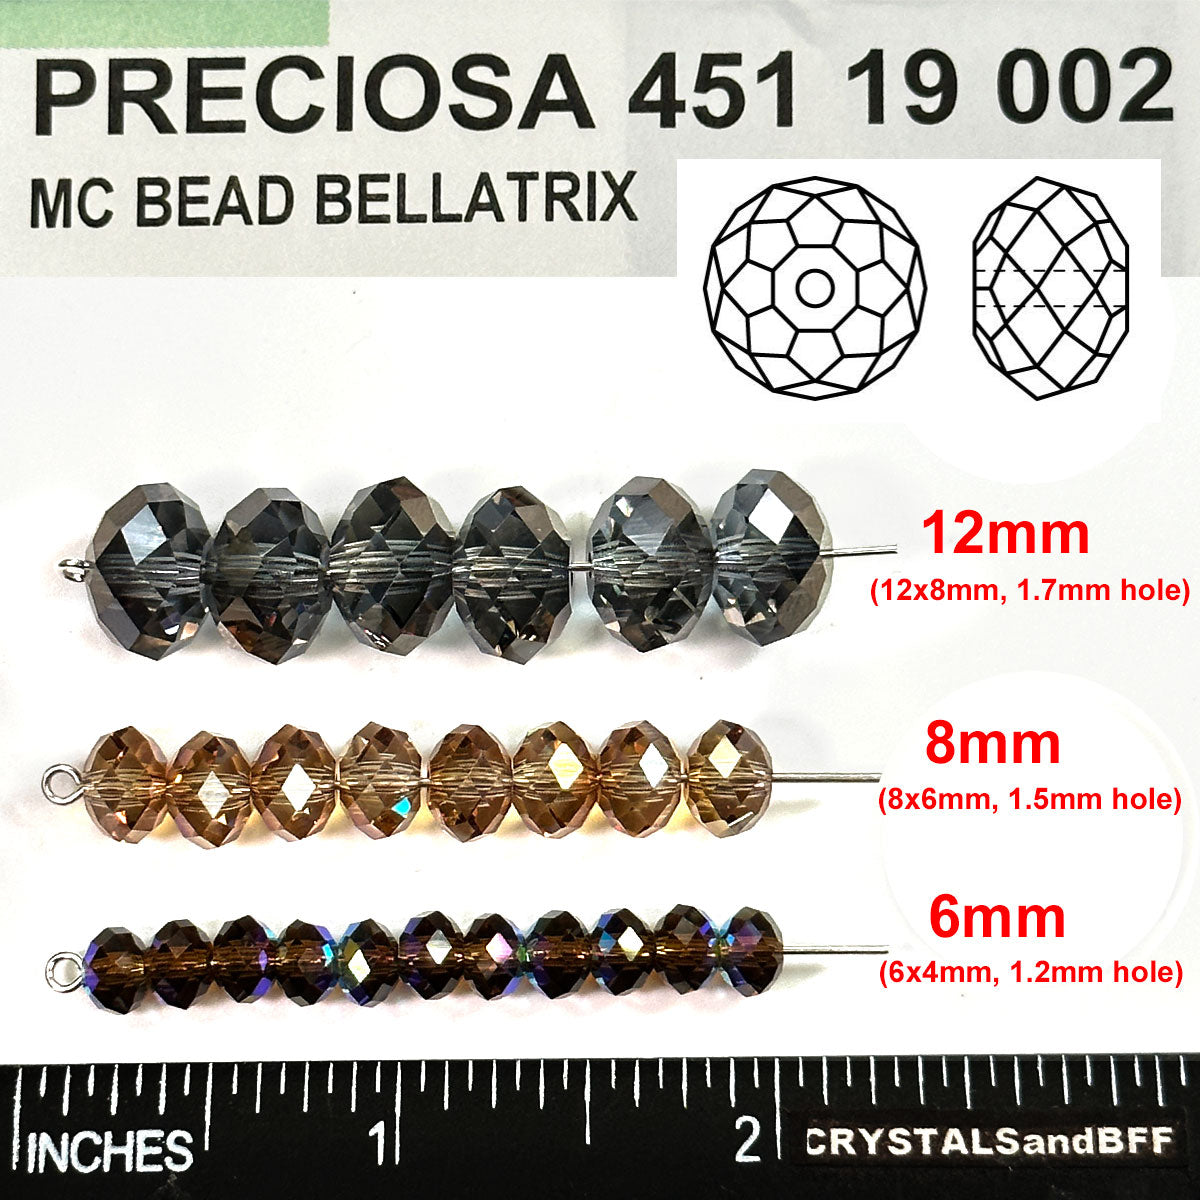 Crystal Venus coated, Czech Machine Cut Bellatrix Crystal Beads, Preciosa 451-19-002, 6mm, 8mm, 12mm, copper spacer beads, #5040 Briolette cut